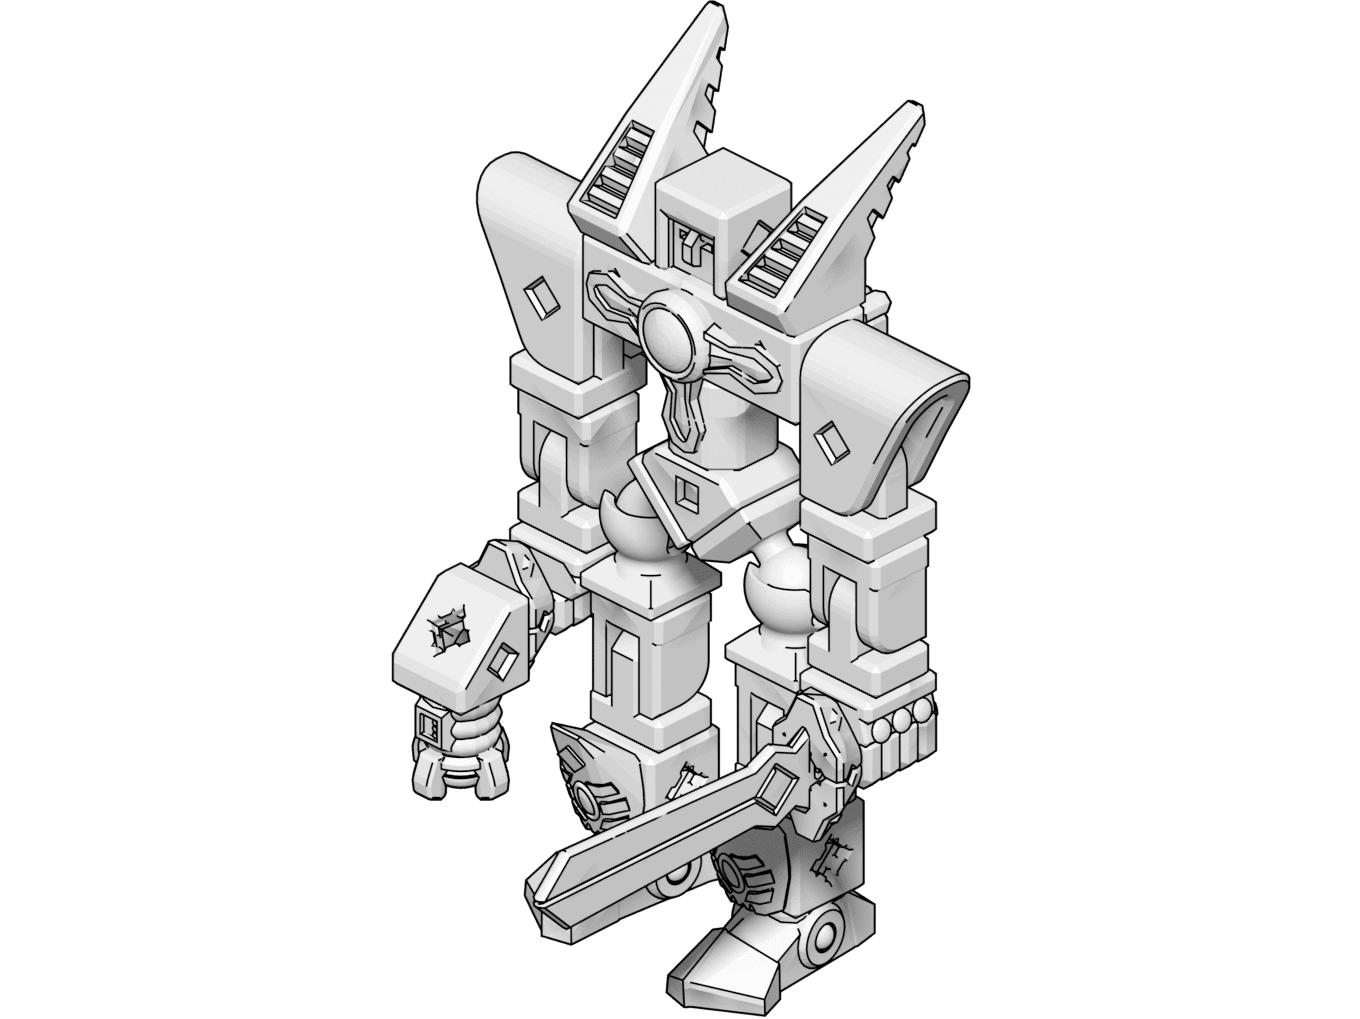 PrintABlok RoboMech Articulated Mech Construction Toy 3d model